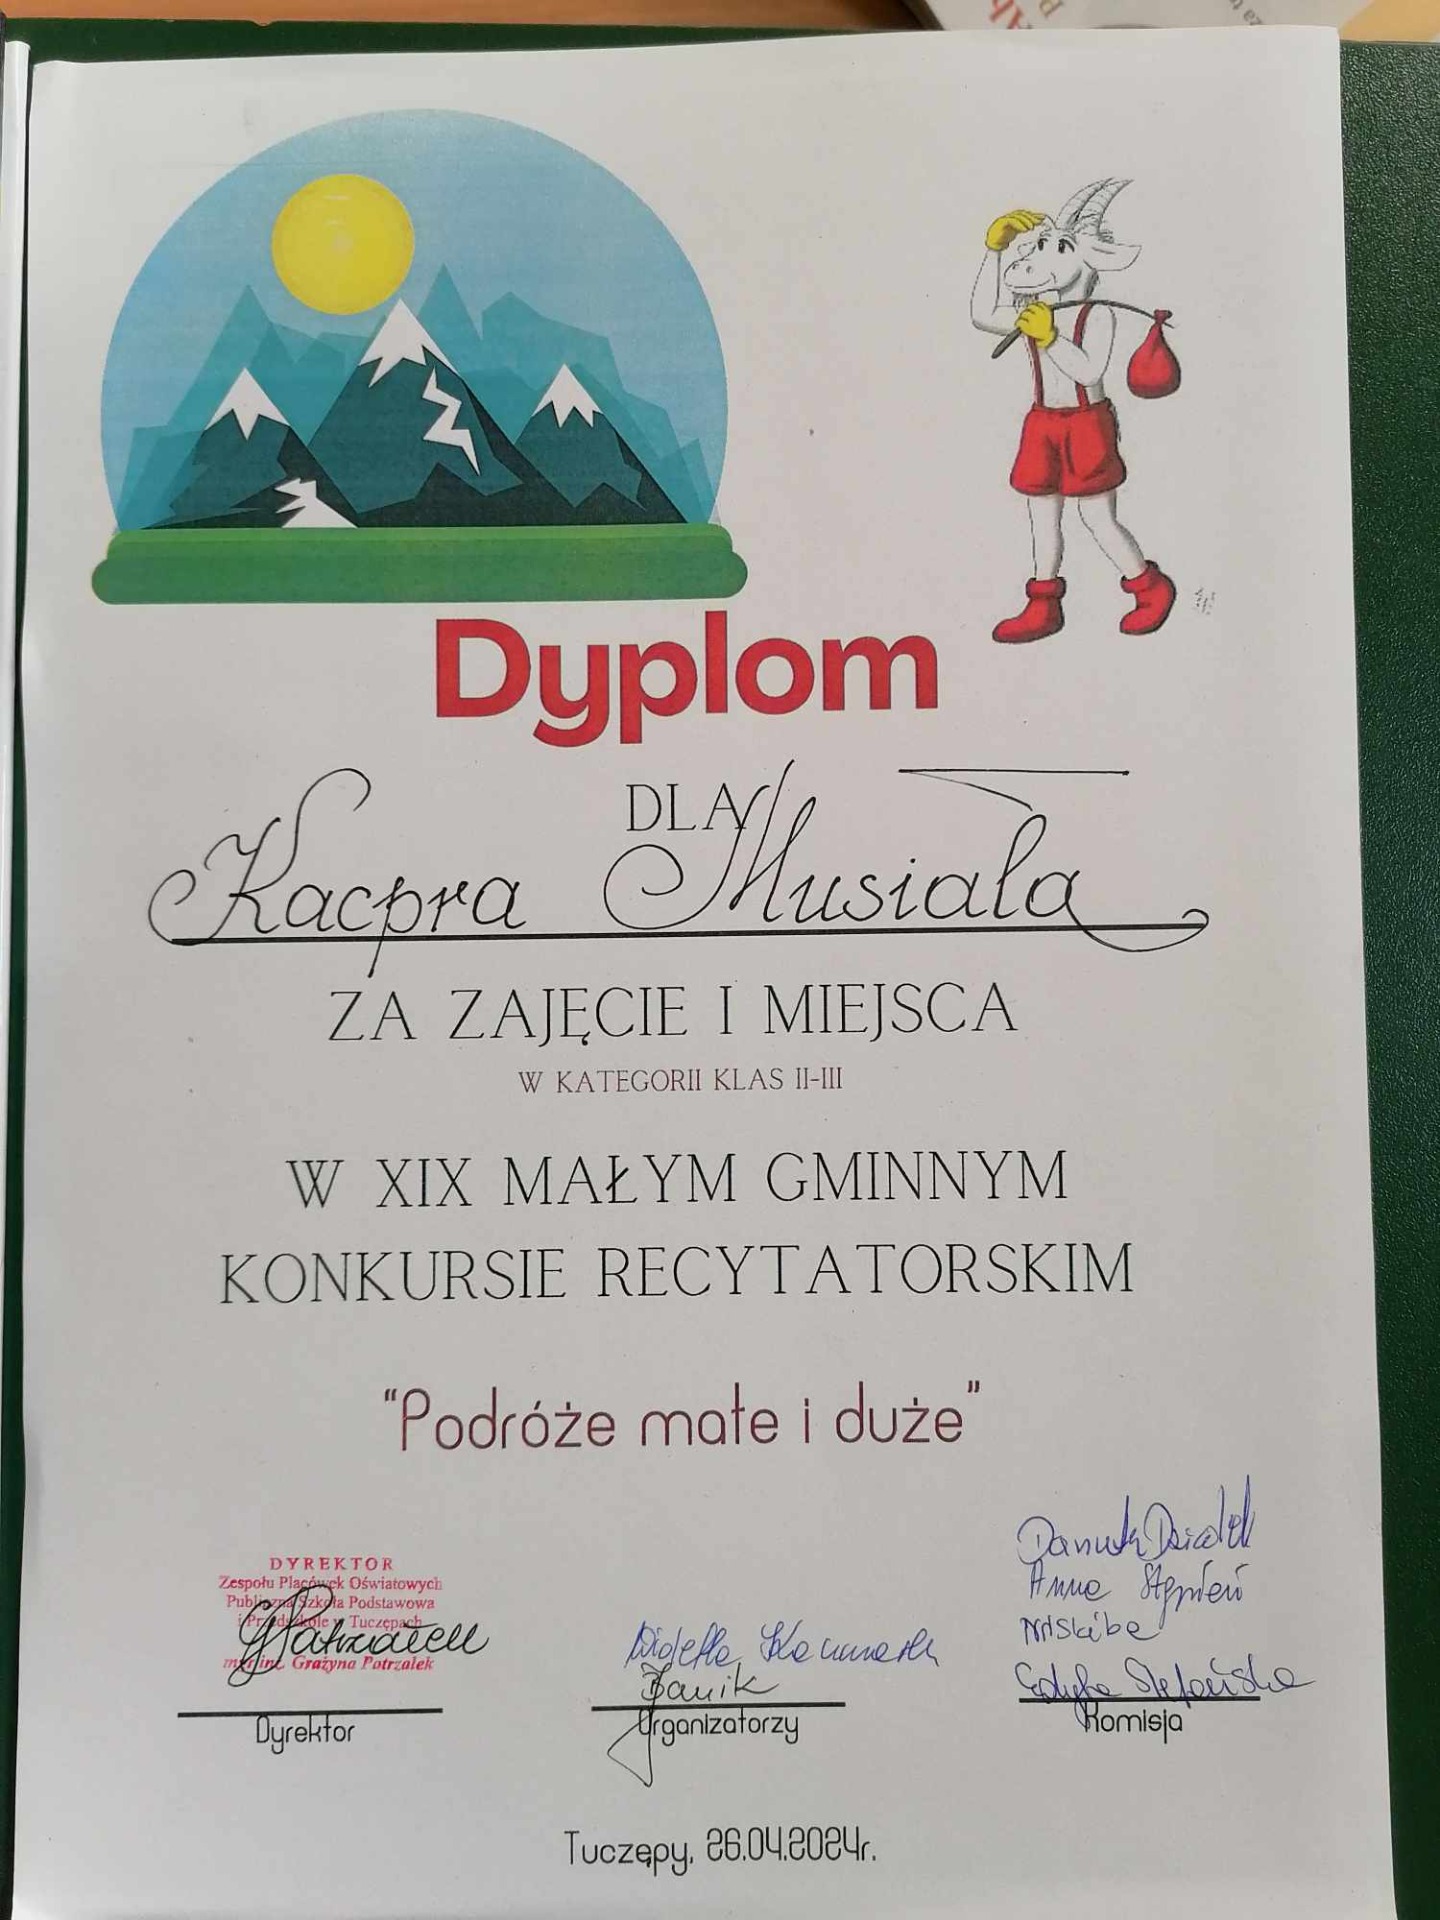 Dyplom za zajęcie pierwszego miejsca w konkursie